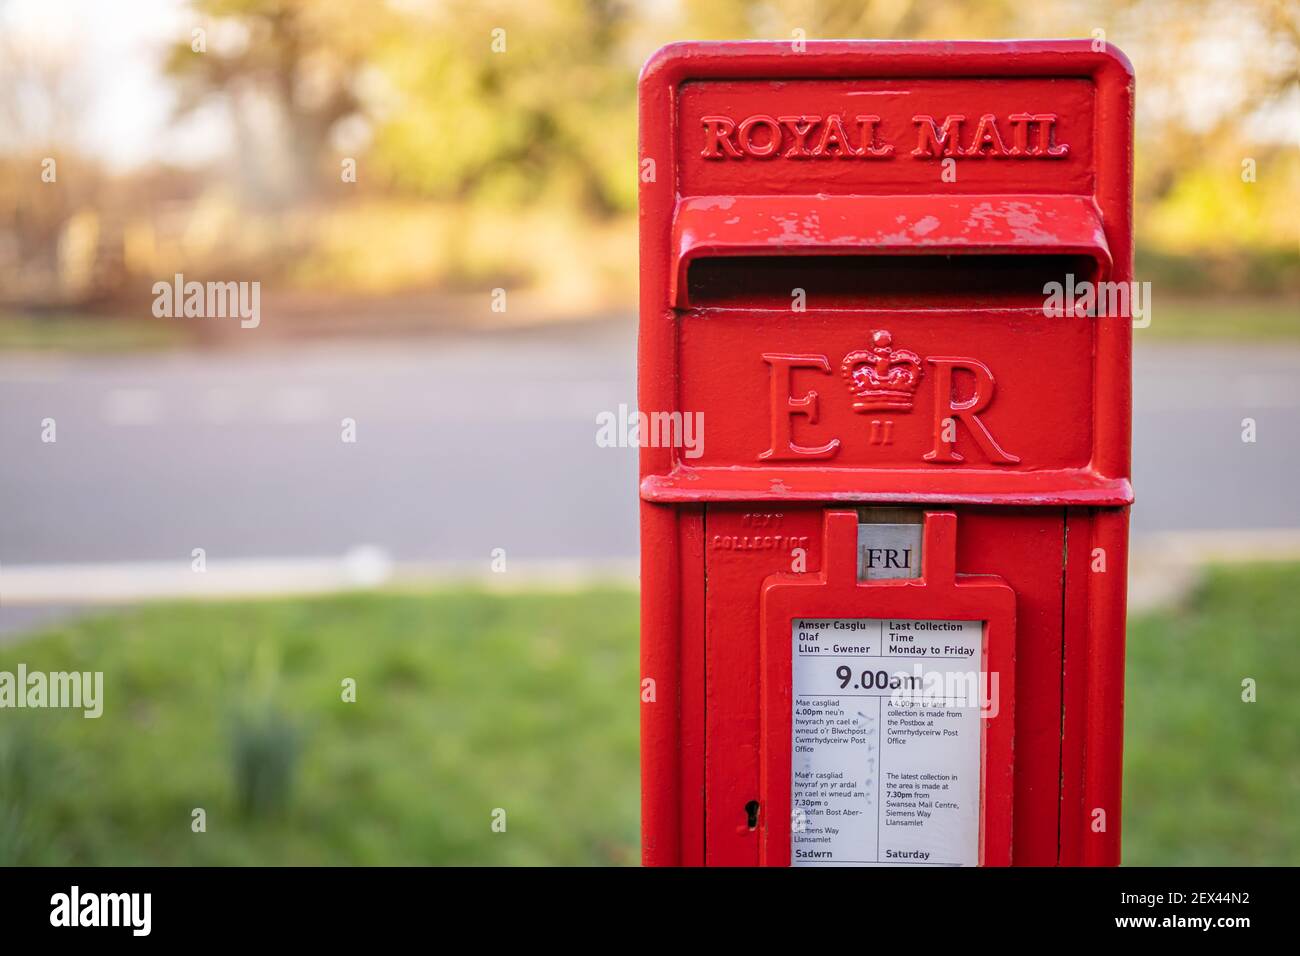 SWANSEA, GALLES, Regno Unito - 25 FEBBRAIO 2021: Casella postale tradizionale britannica Red Royal Mail ER per le lettere in una strada in Galles, Regno Unito Foto Stock